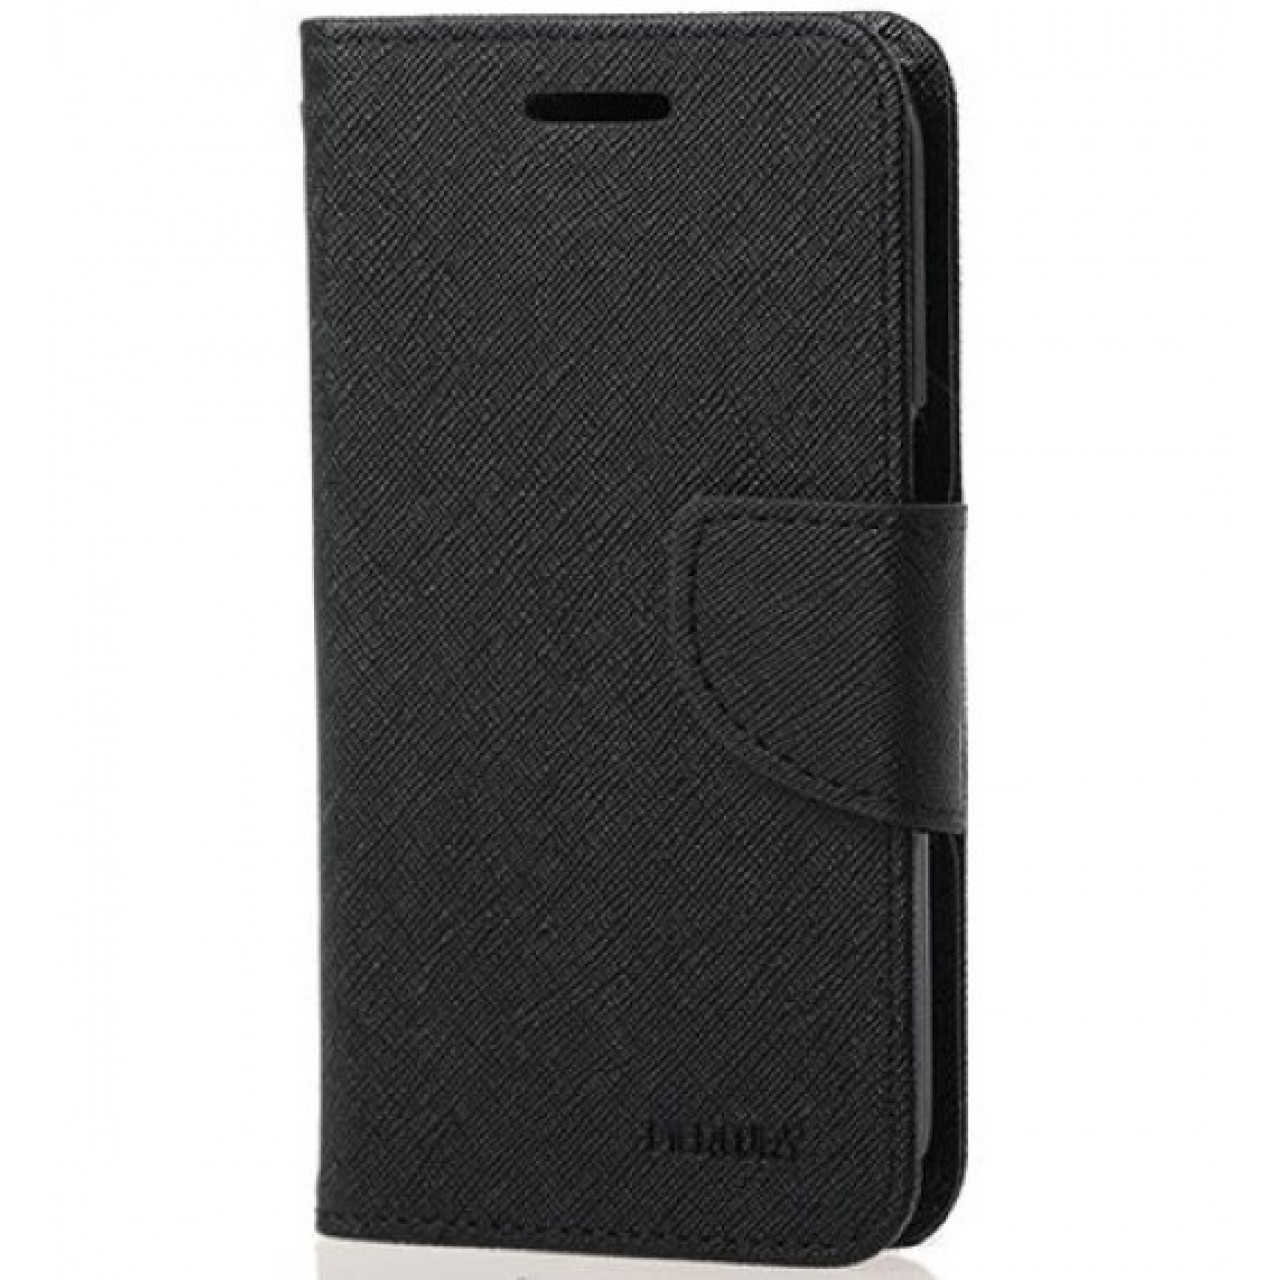 Θήκη Samsung Galaxy Grand i9082 / i9080 / i9060 PU Leather Πορτοφόλι flip Fancy Diary - 2706 - Μαύρο - OEM